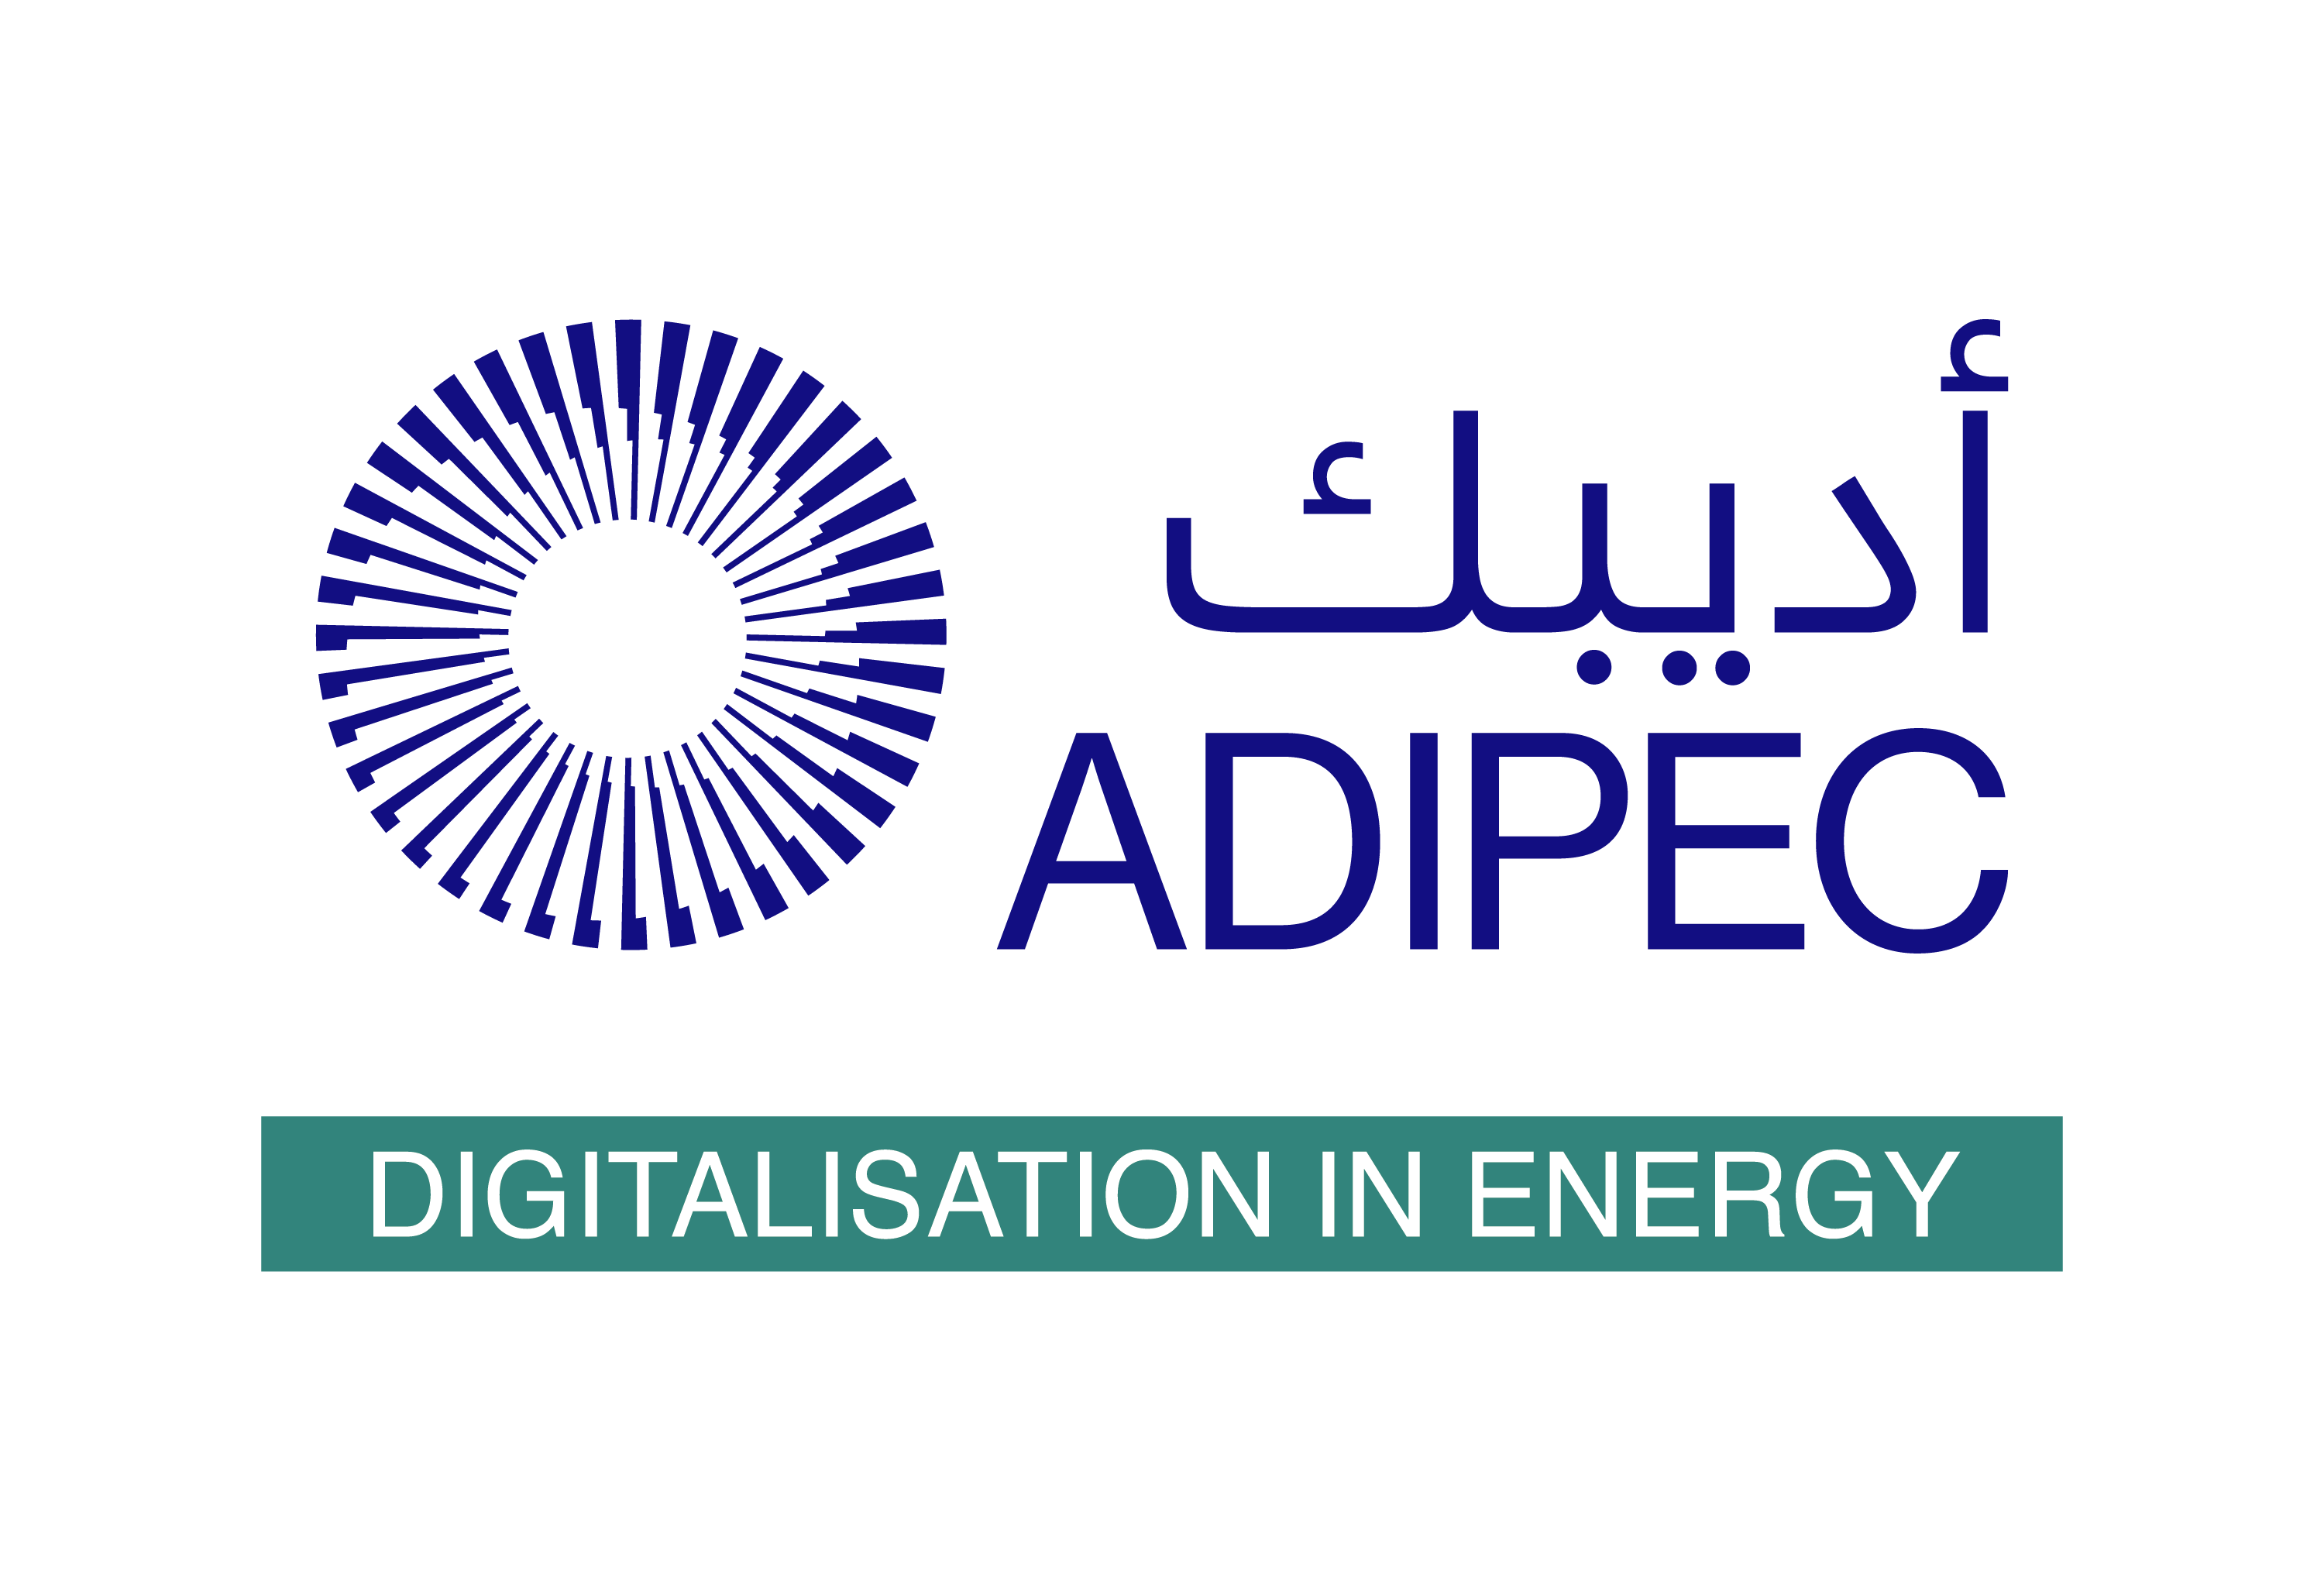 ADIPEC DIGITALISATION IN ENERGY